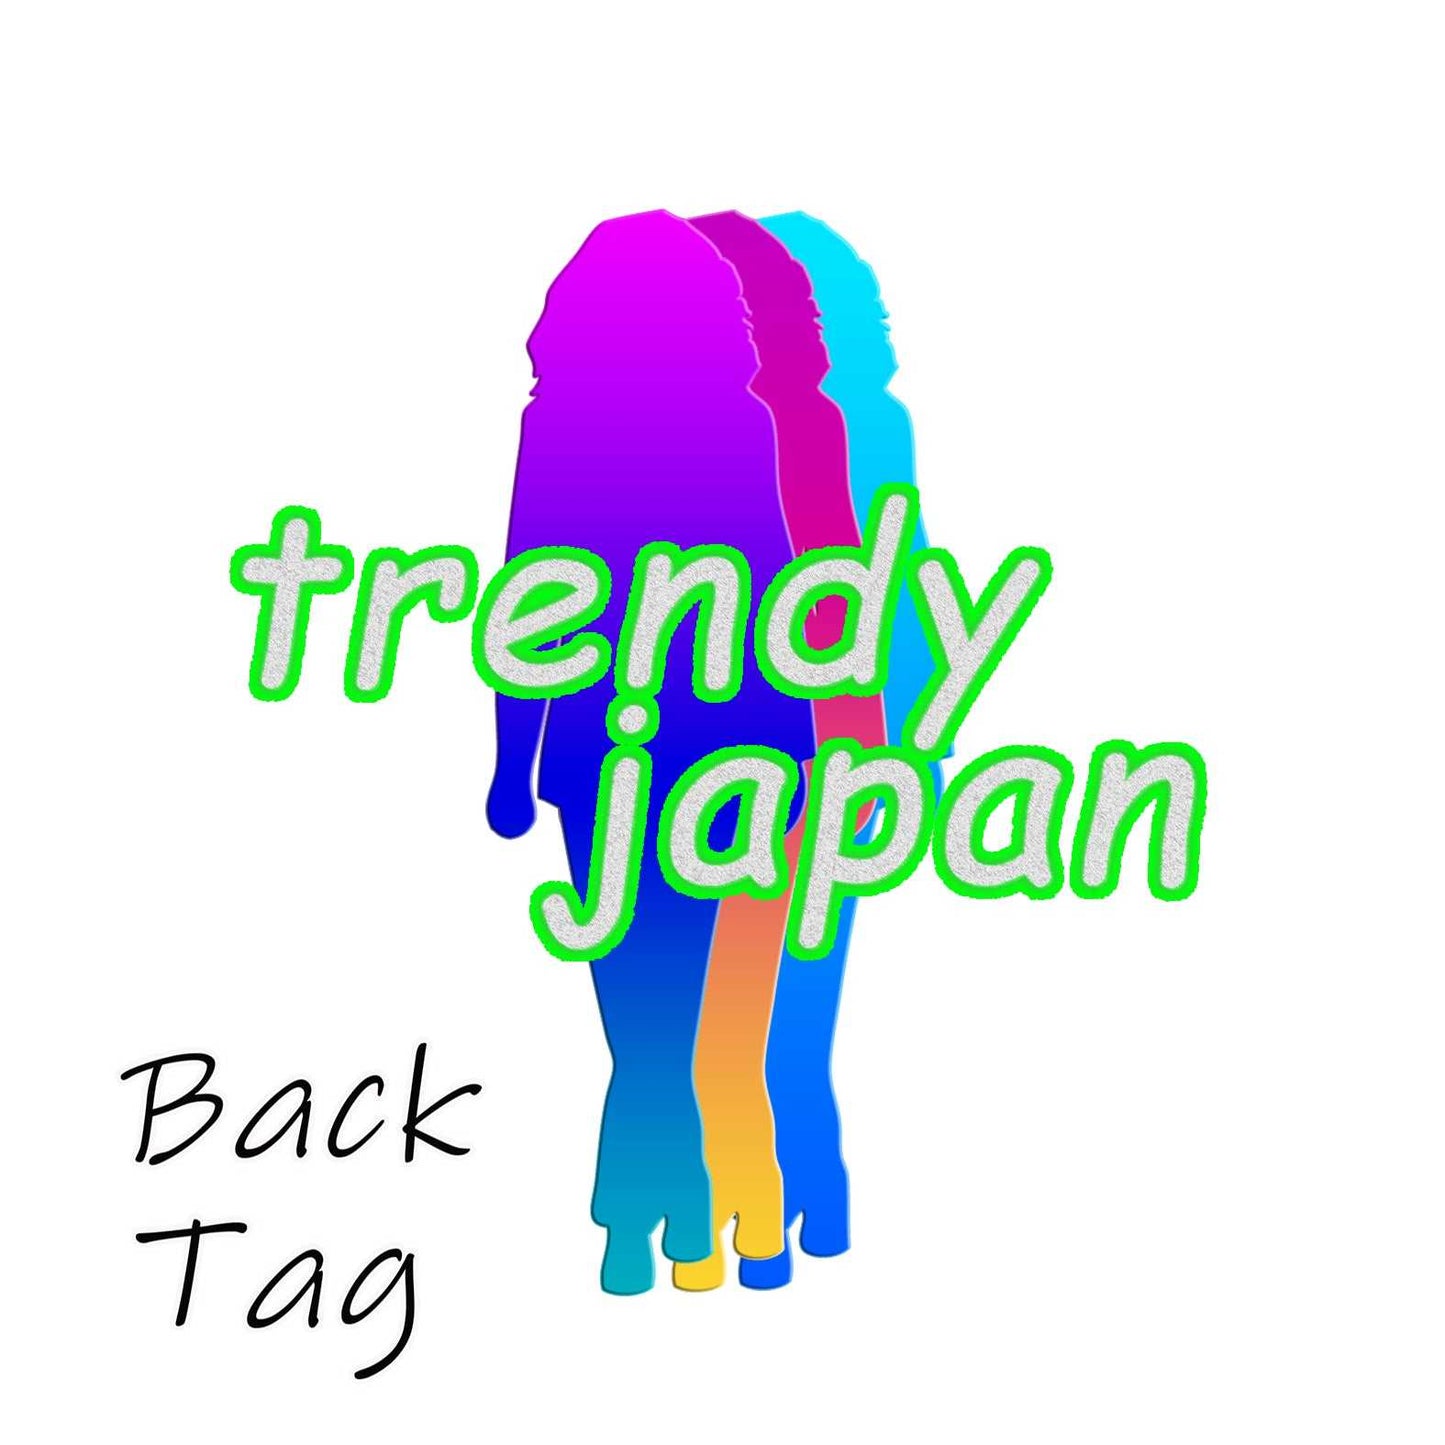 East Asia Unisex T Geek BL | Online Clothing in Japan TRENDYJAPAN - TrendyJapan